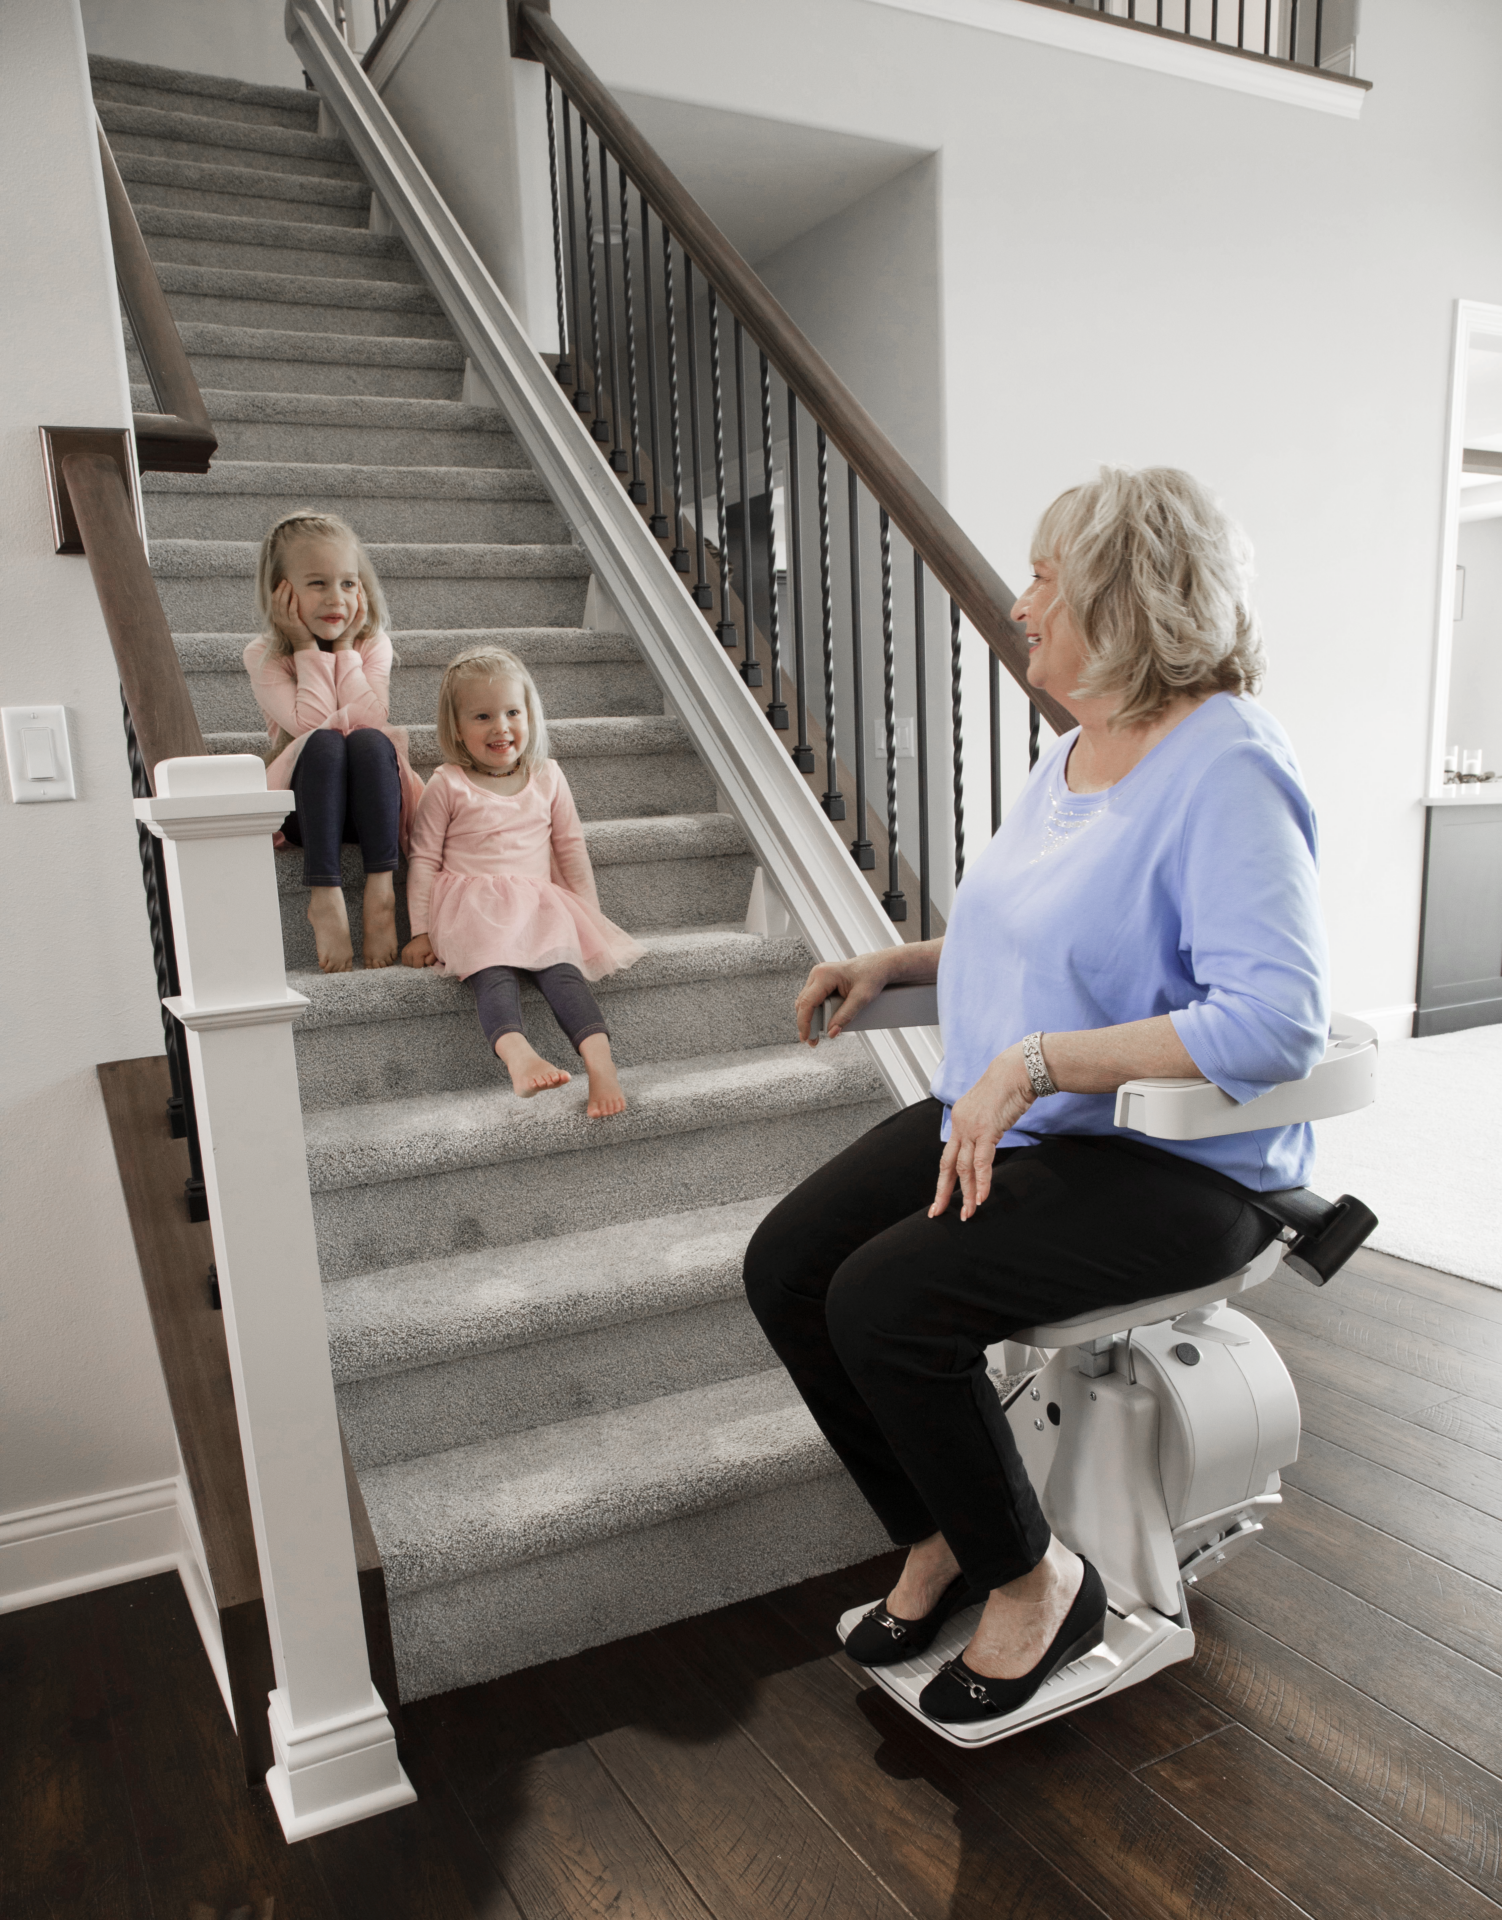 bruno elan lady riding grandkids on steps